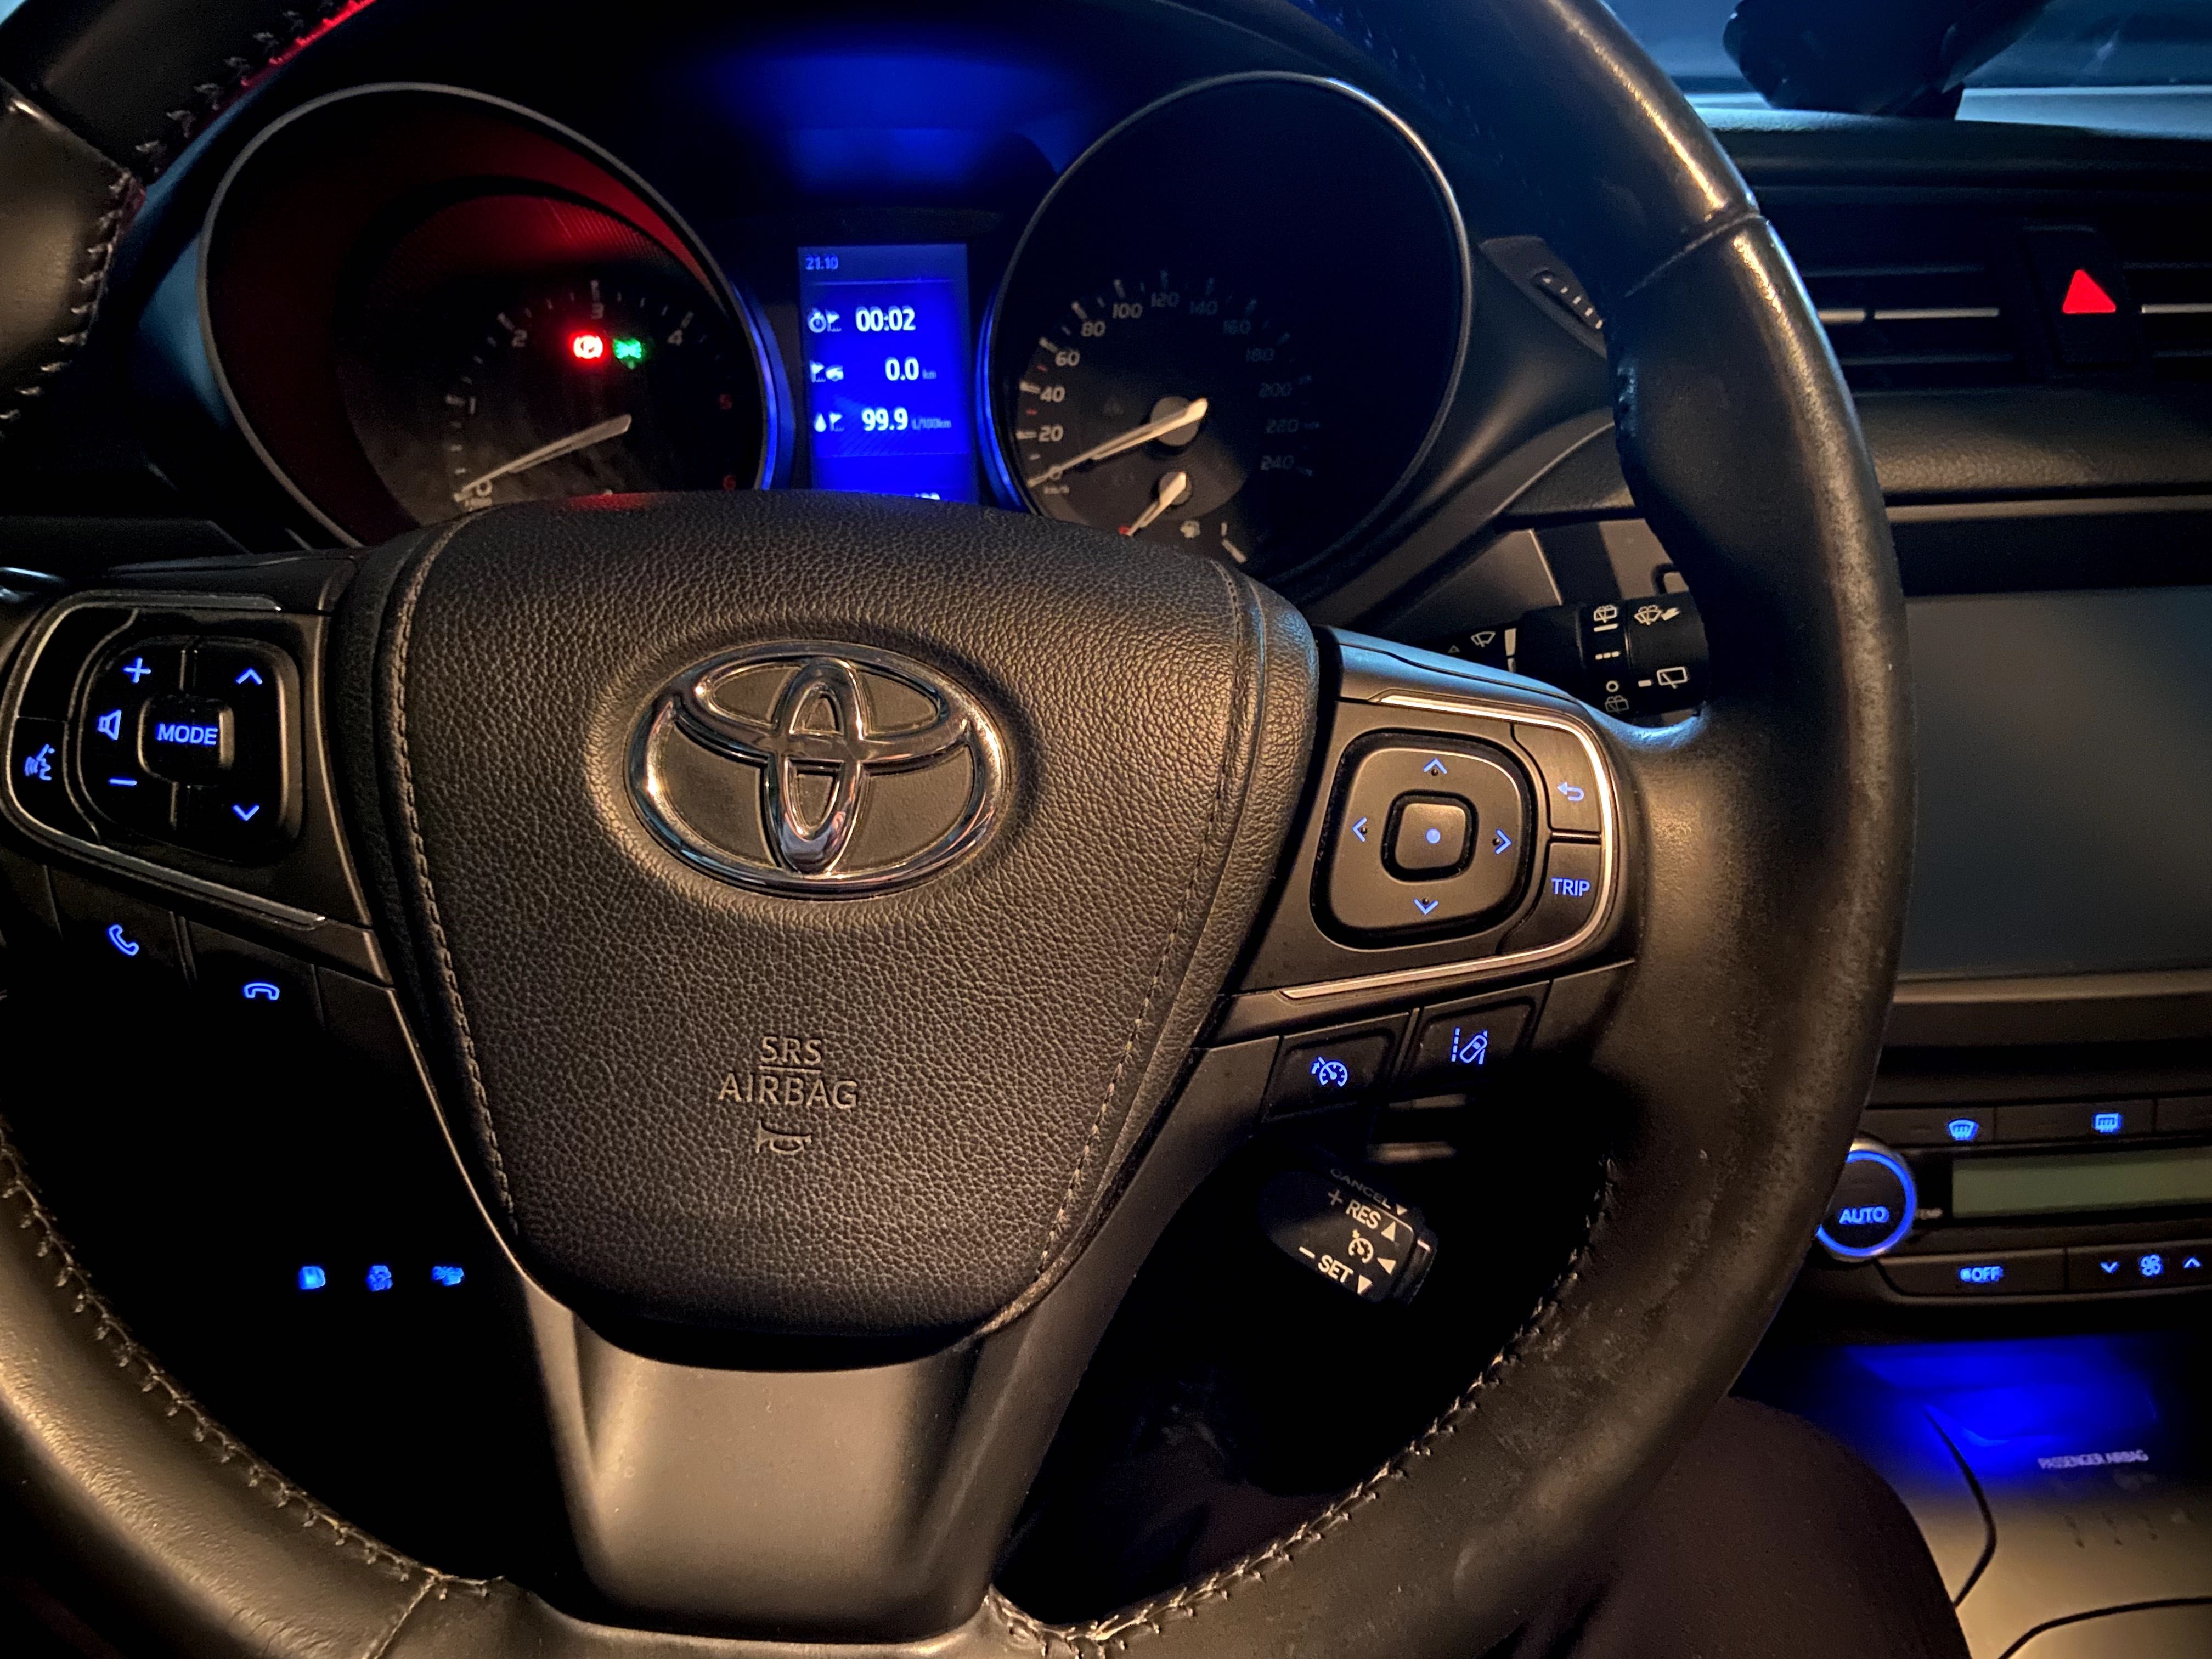 Toyota Avensis - 1.6 Diesel